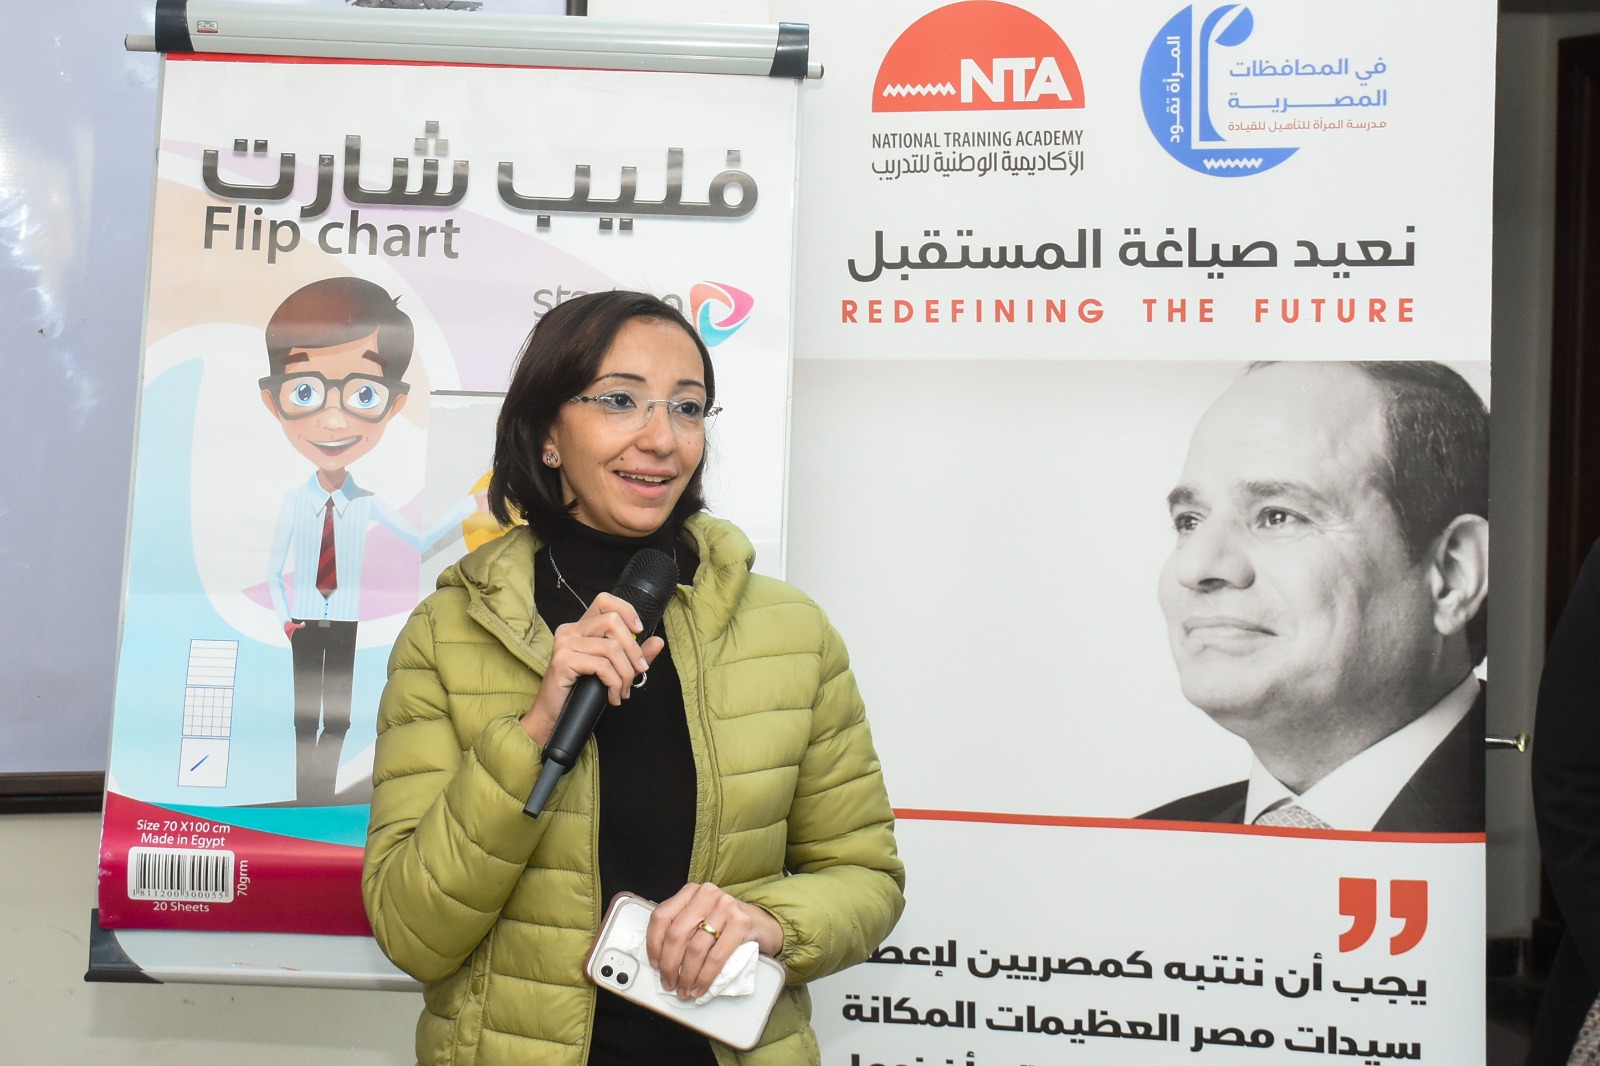 الدفعة الثانية من برنامج المرأة تقود في المحافظات المصرية